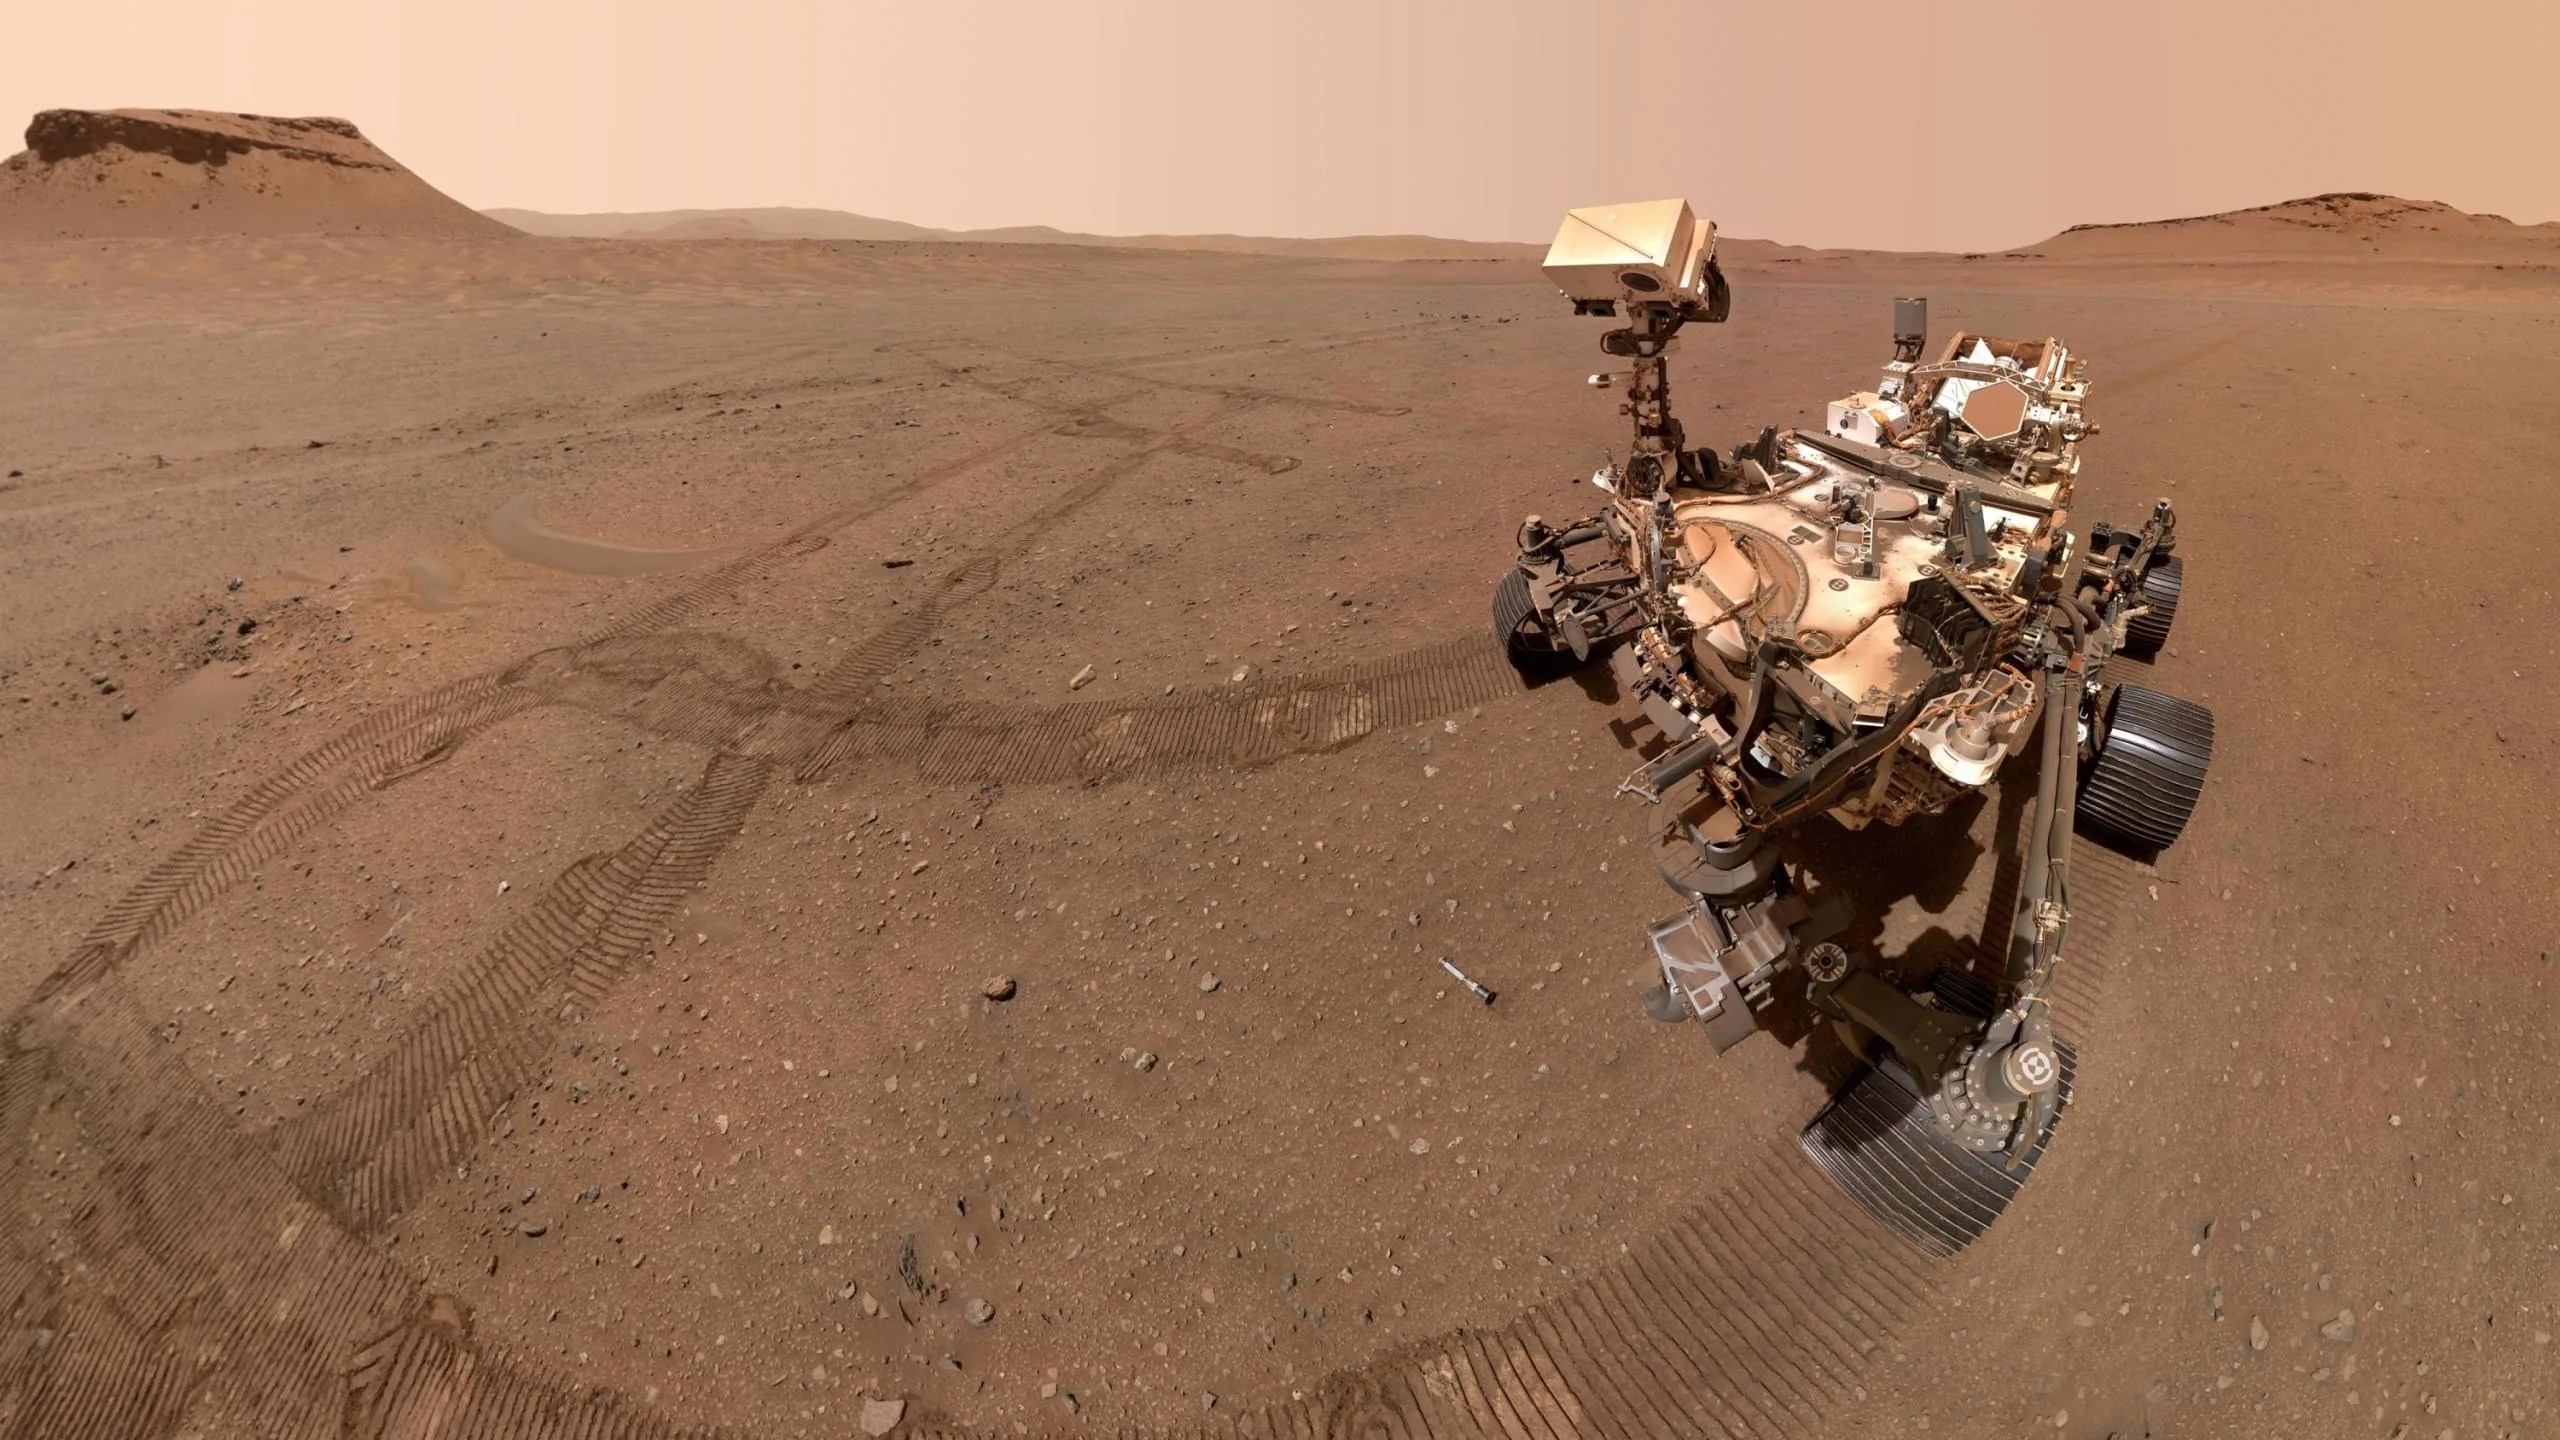 Esta imagen es una selfie sacada por el rover Perseverance de la NASA en Marte. Se ve parte del rover mirando hacia uno de los 10 tubos de muestras almacenados en el depósito que creó en un área apodada “Three Forks”. El fondo muestra el paisaje marciano, donde predomina el color rojizo.